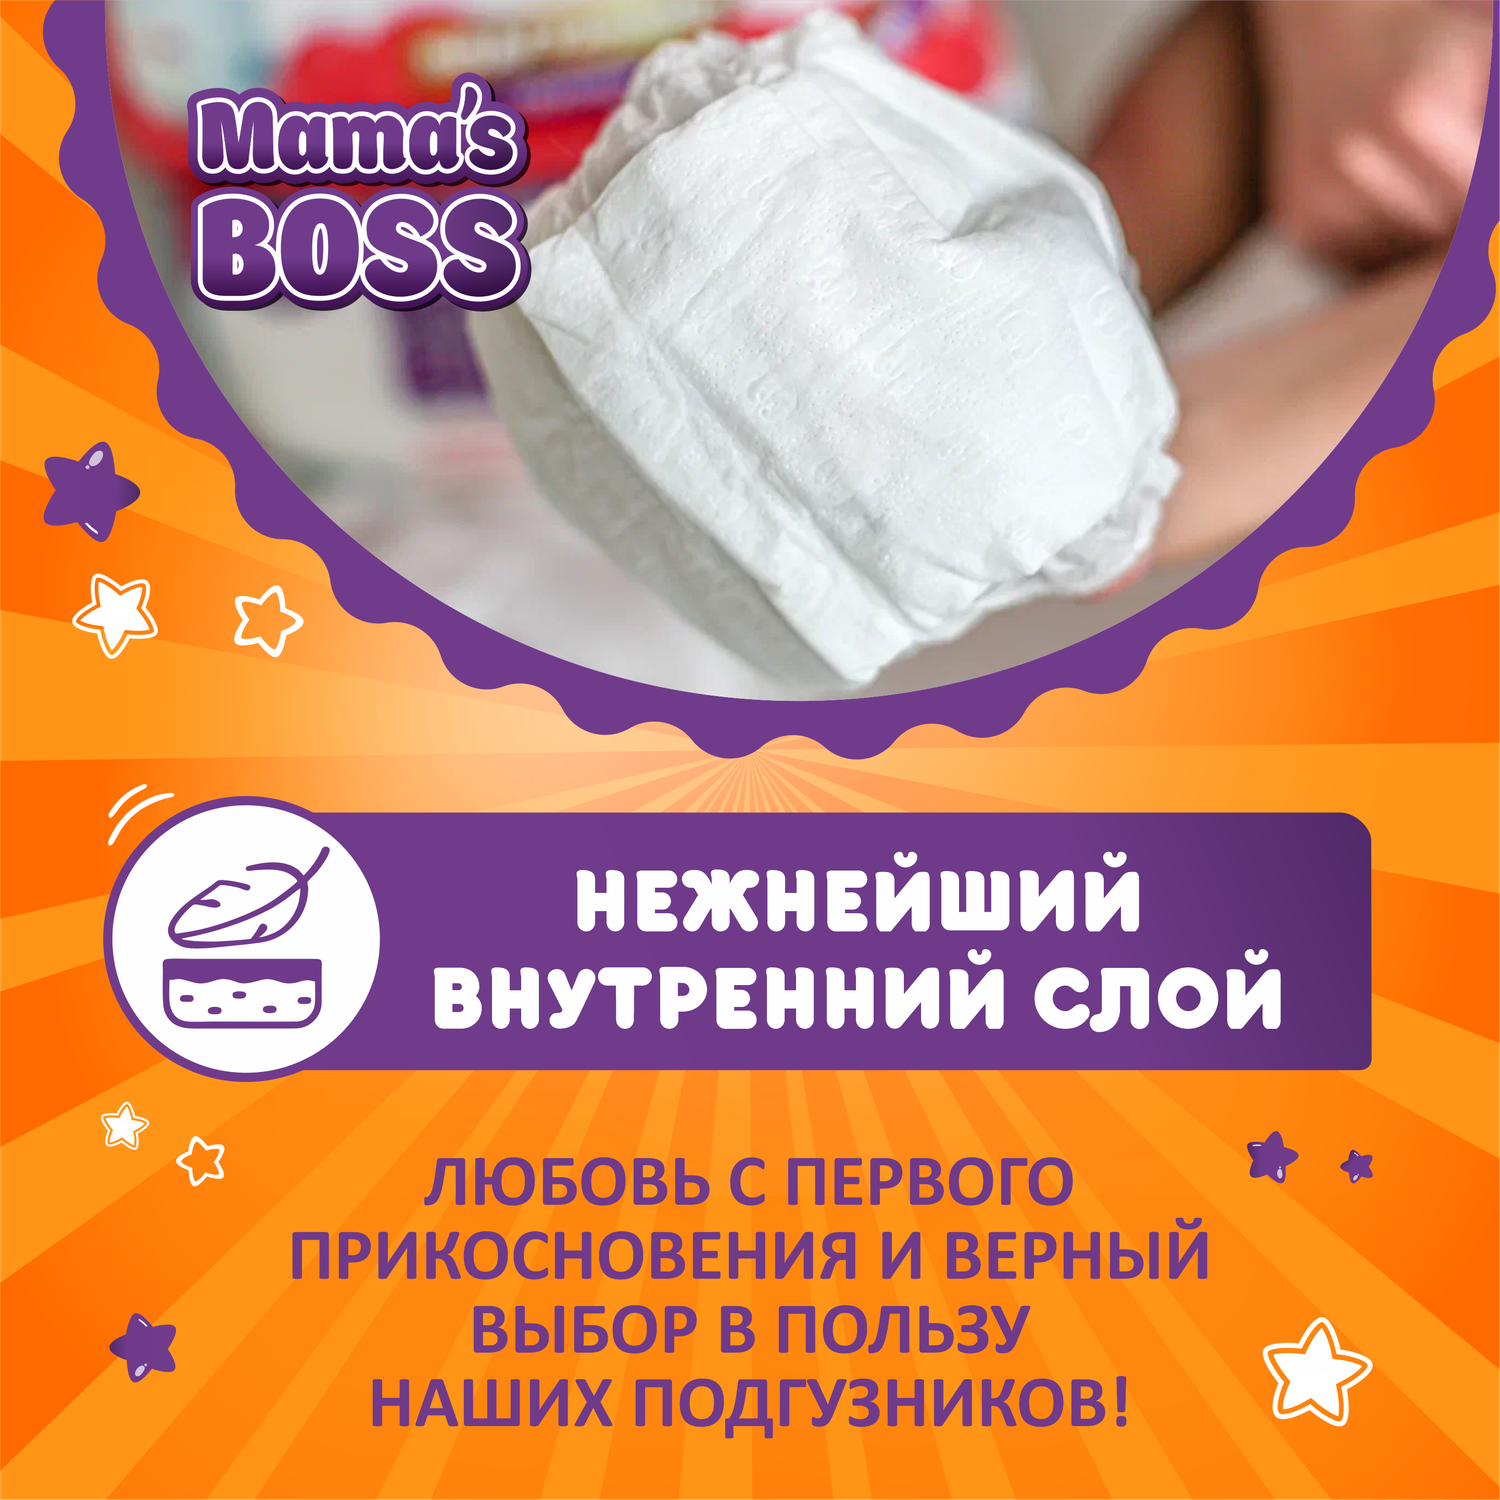 Подгузники трусики Mamas BOSS для детей размер M 54 шт - фото 4